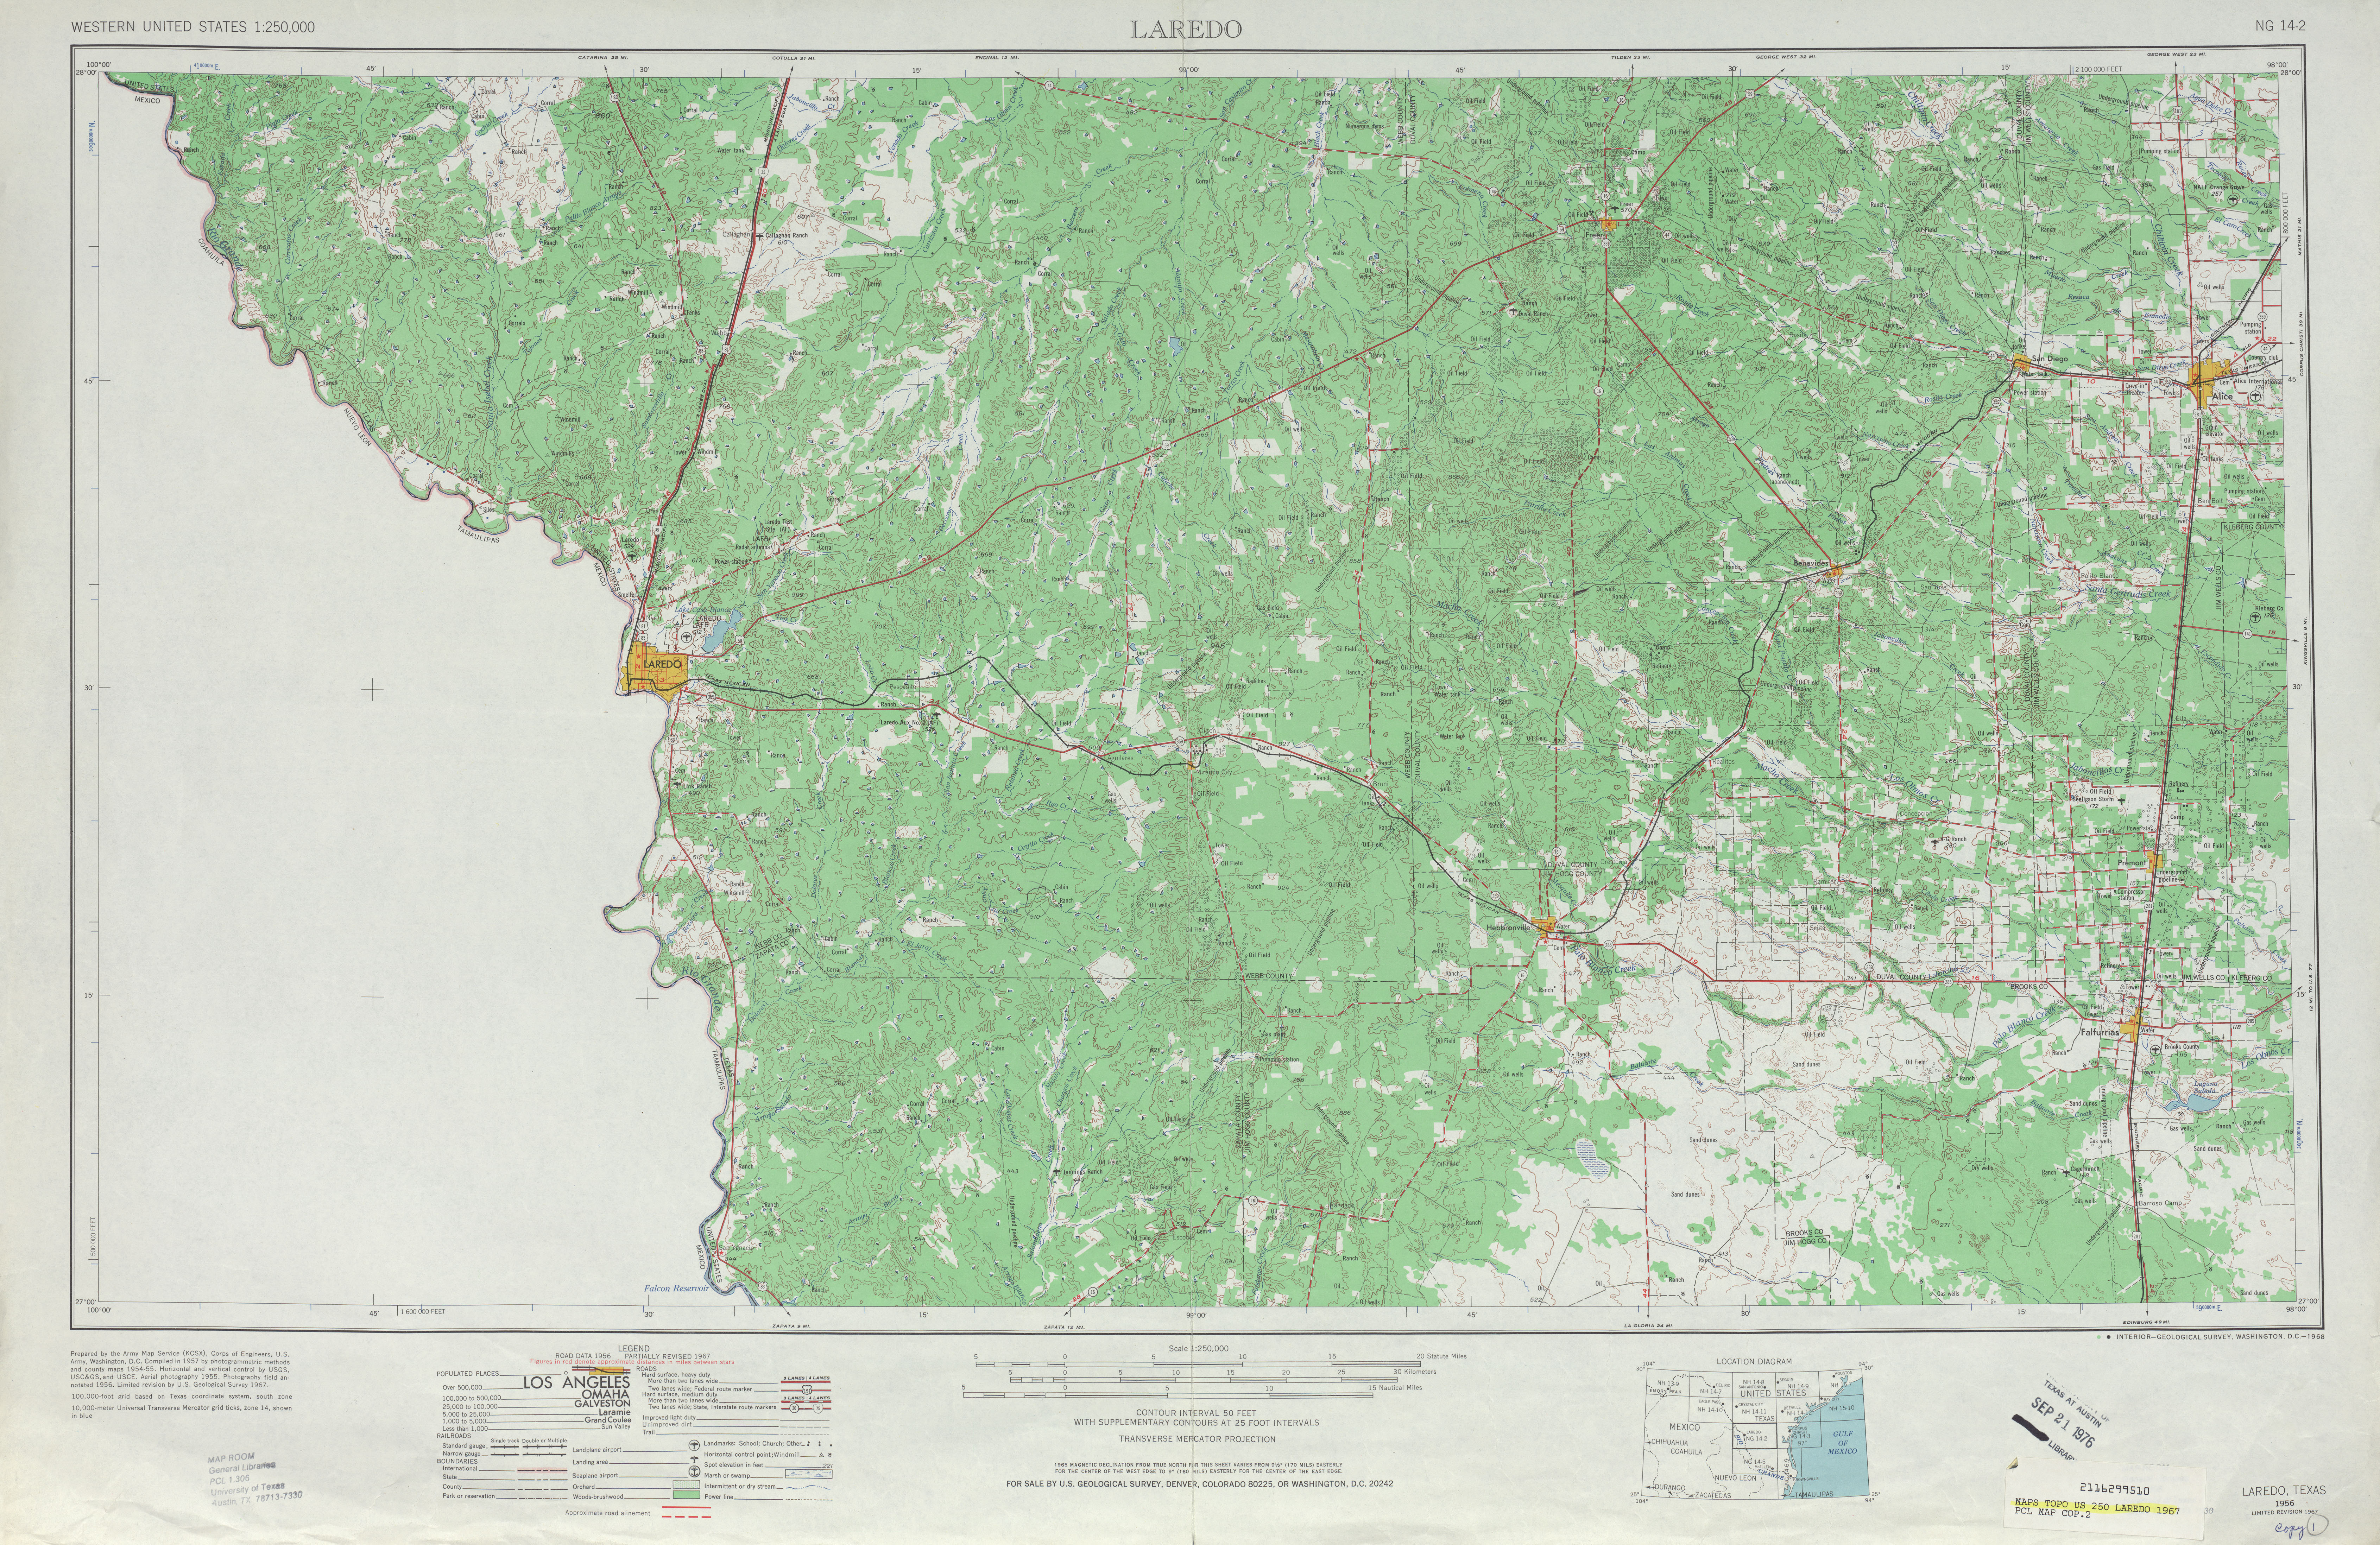 Hoja Laredo del Mapa Topográfico de los Estados Unidos 1967